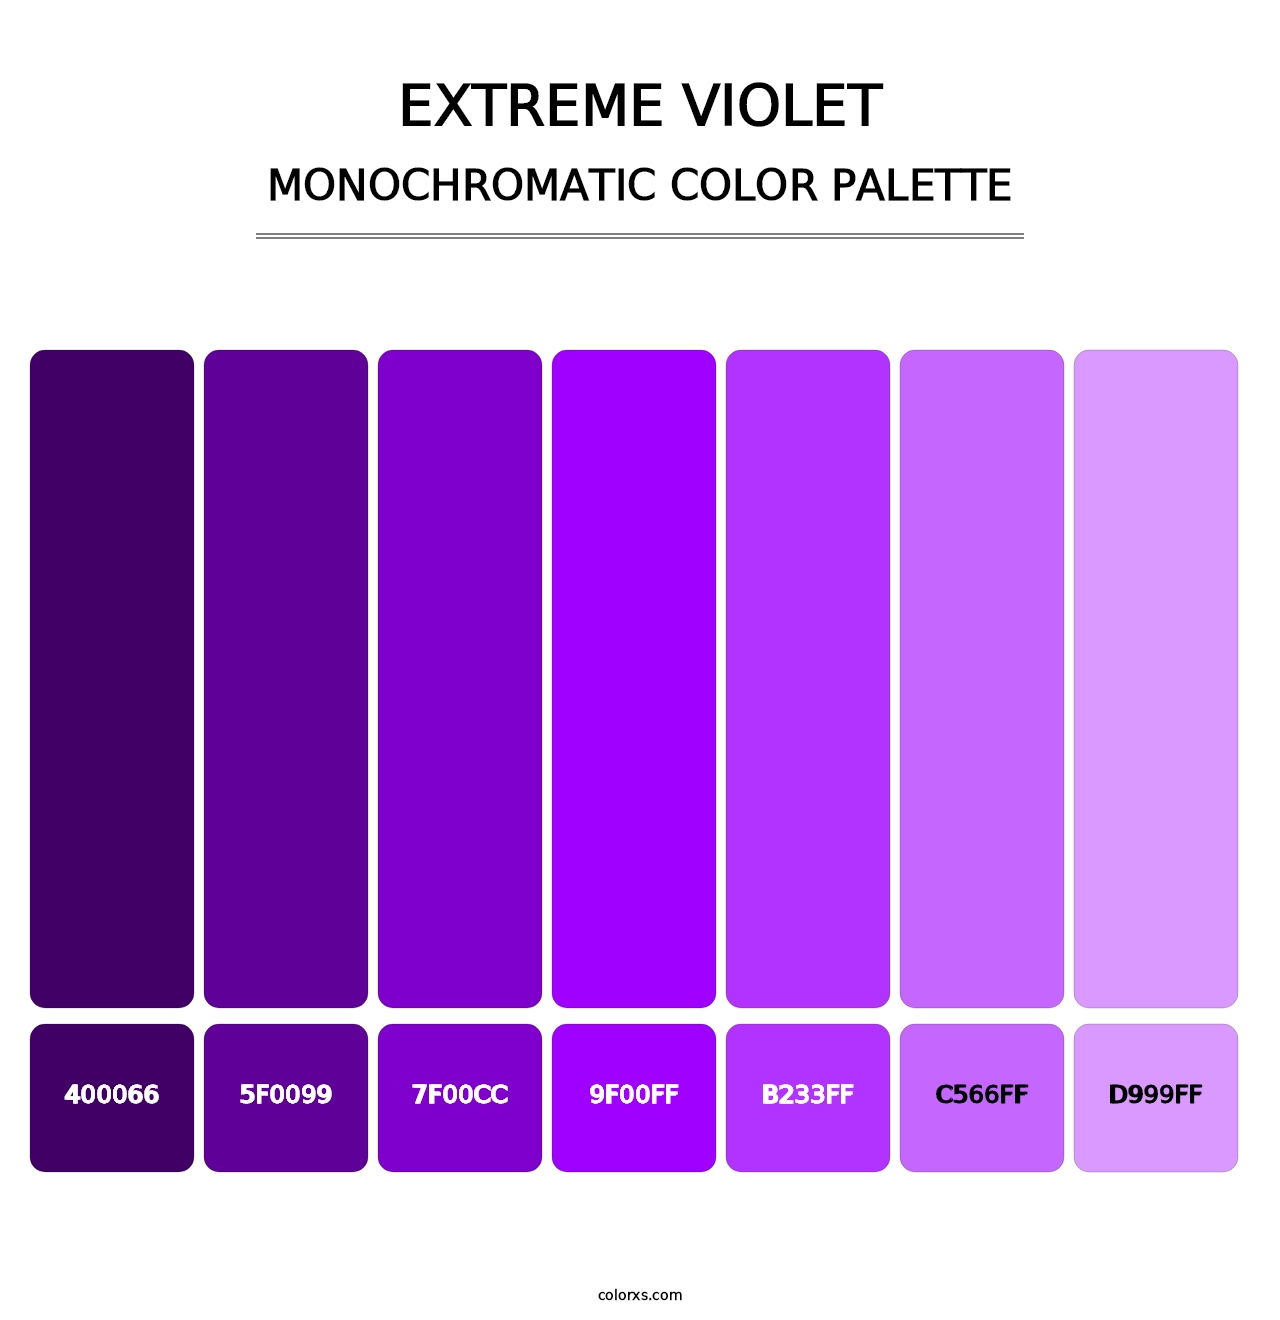 Extreme Violet - Monochromatic Color Palette